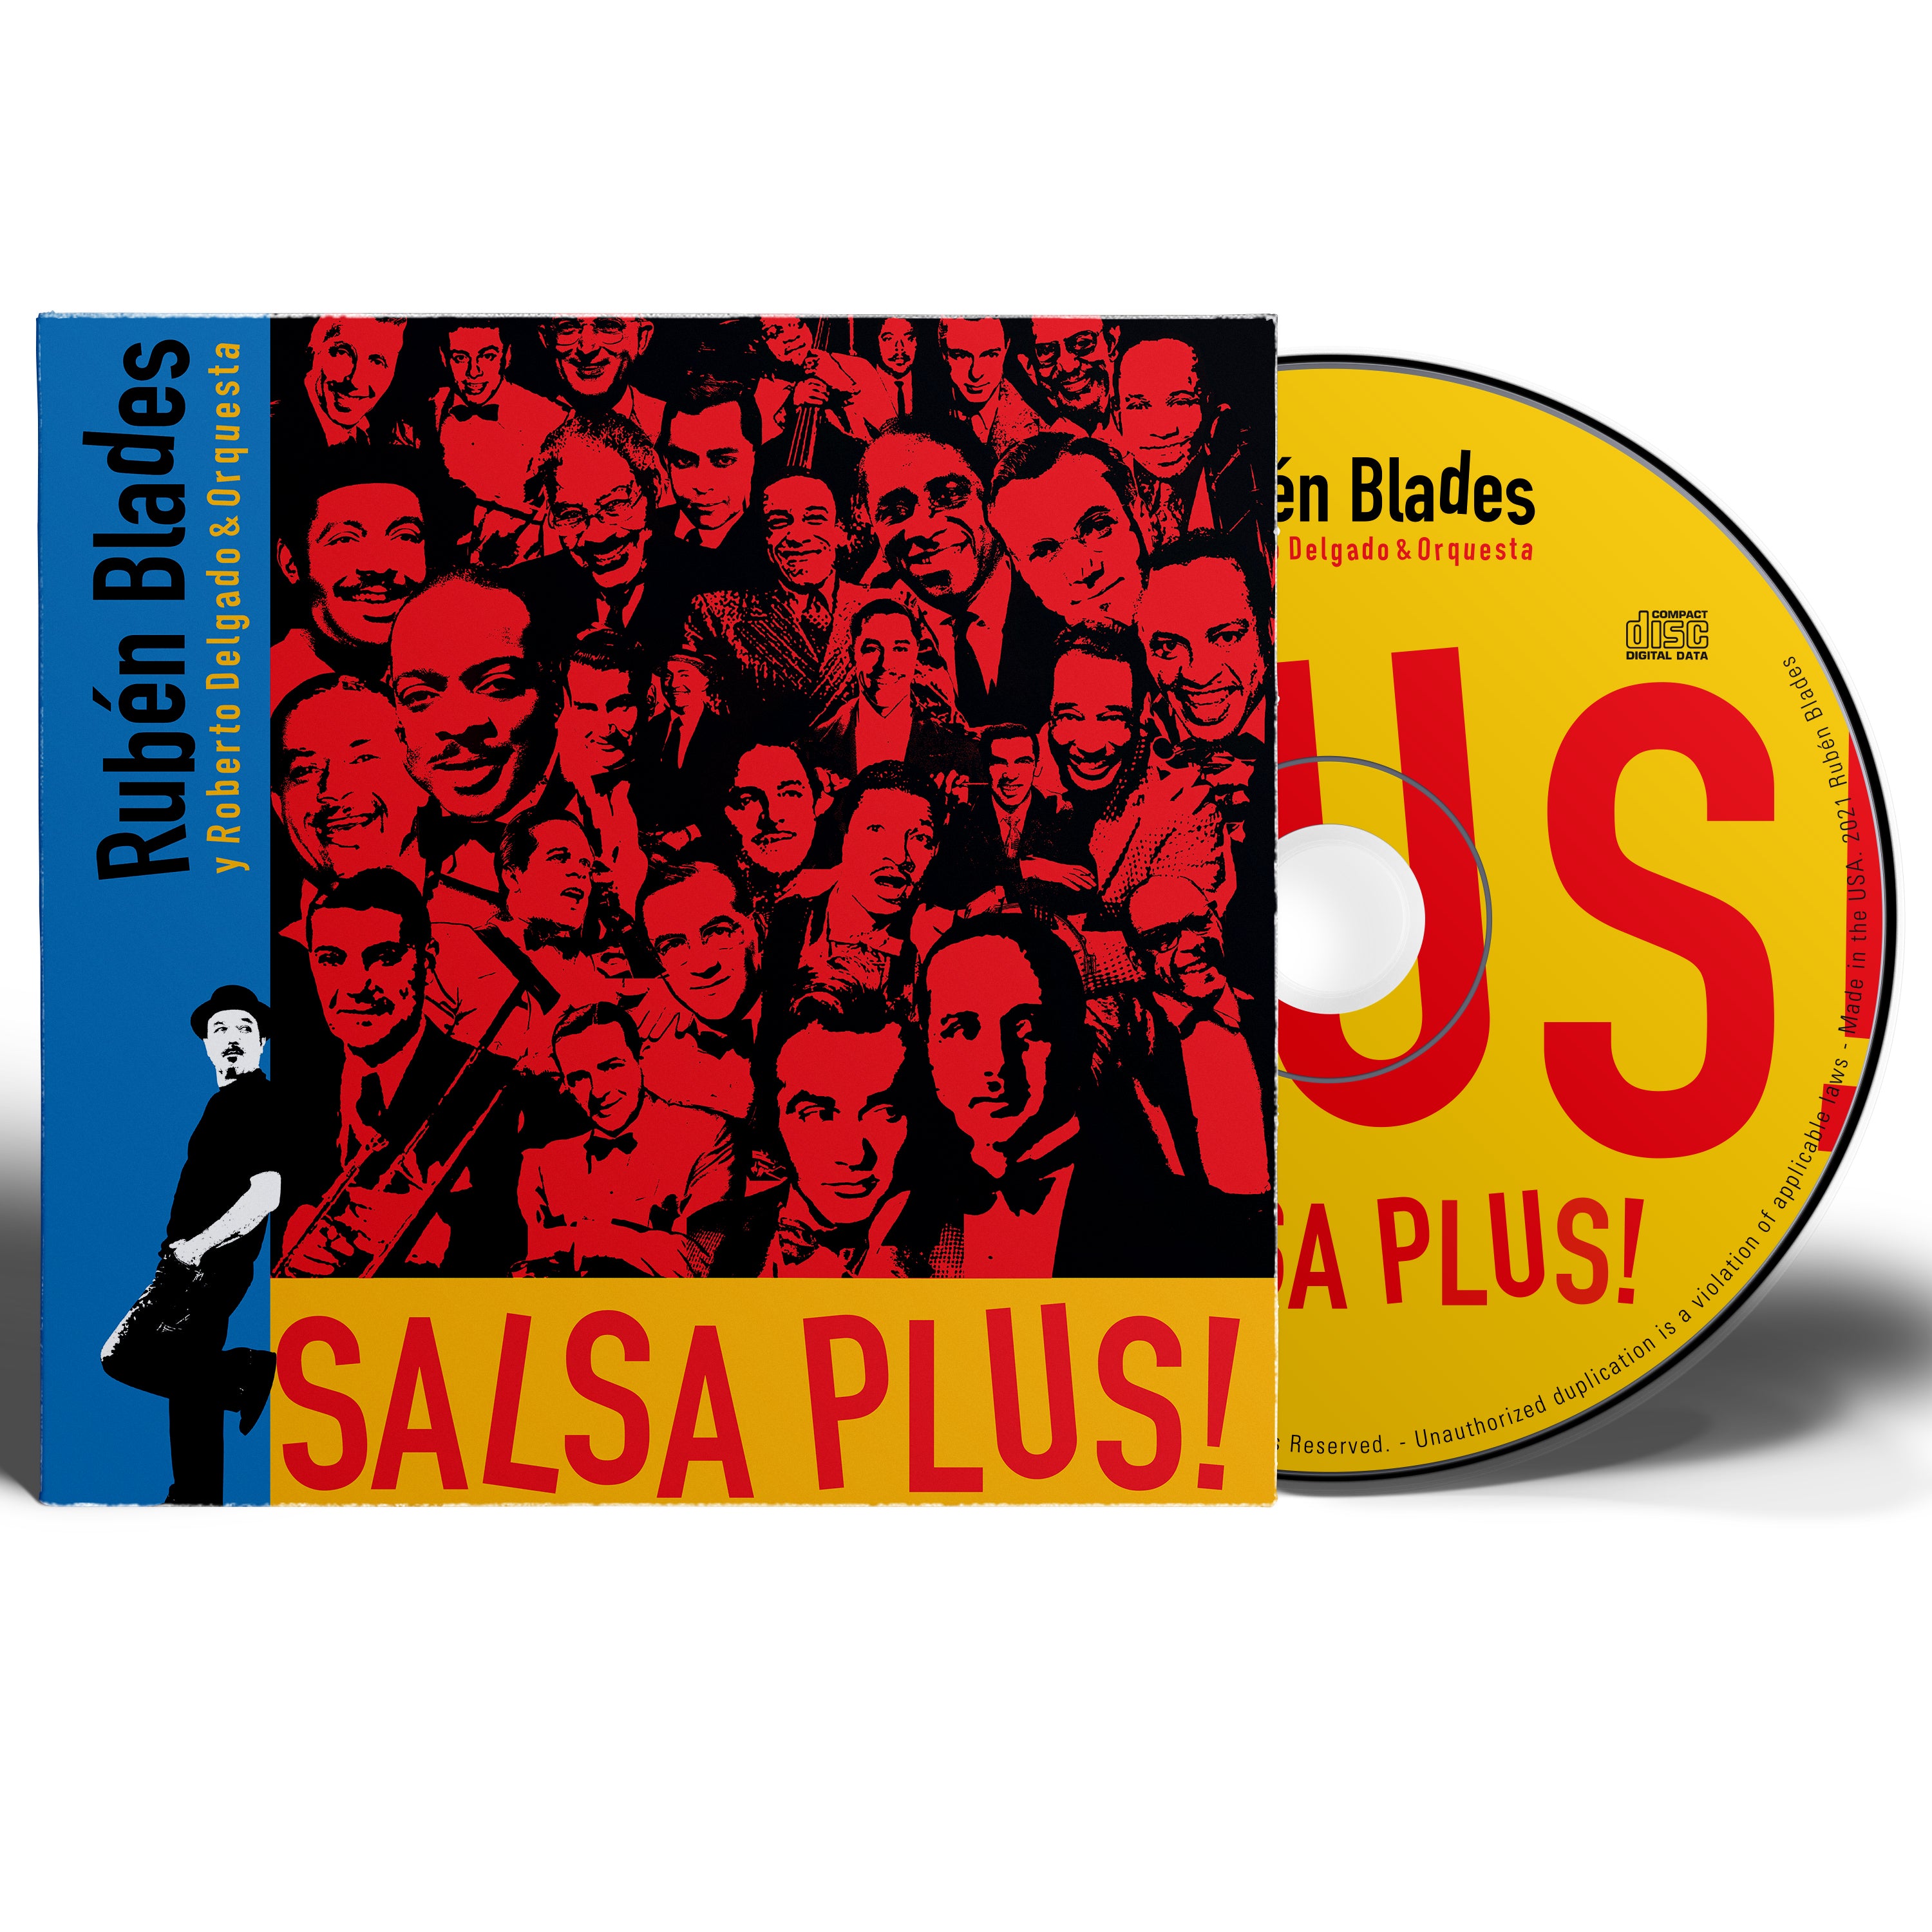 Rubén Blades con Roberto Delgado y Orquesta - "SALSA PLUS!" CD